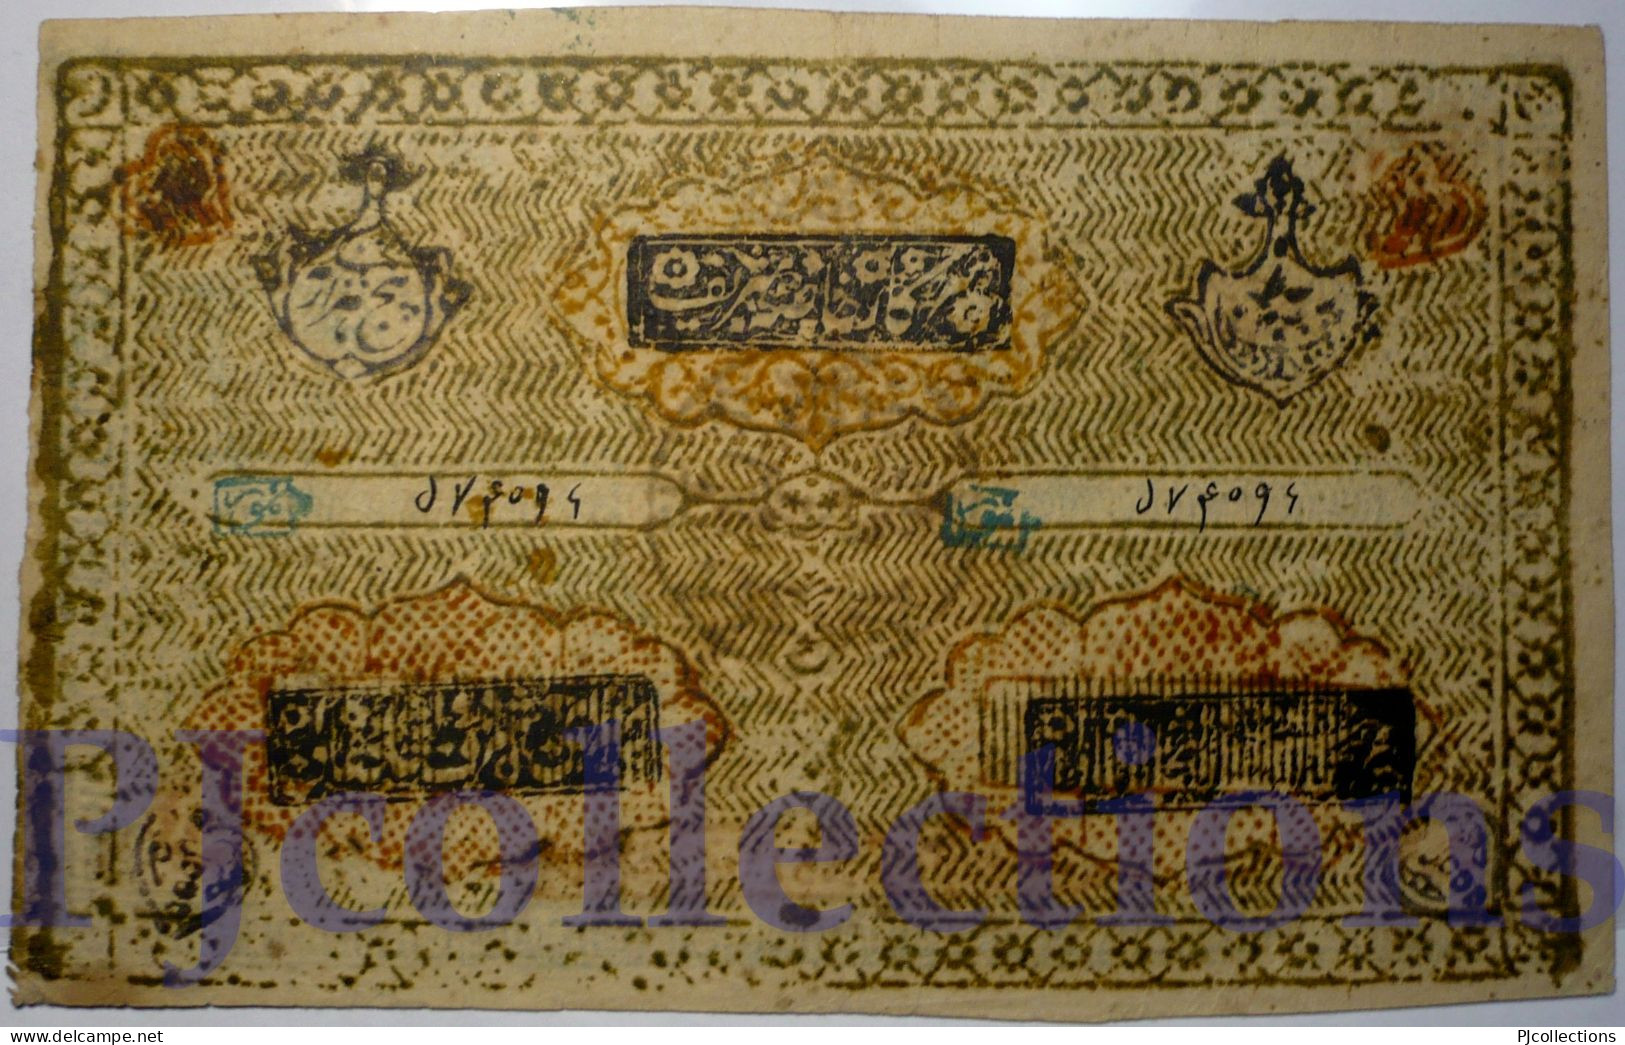 UZBEKISTAN 5000 TENGAS 1918 PICK 18b UNC - Ouzbékistan